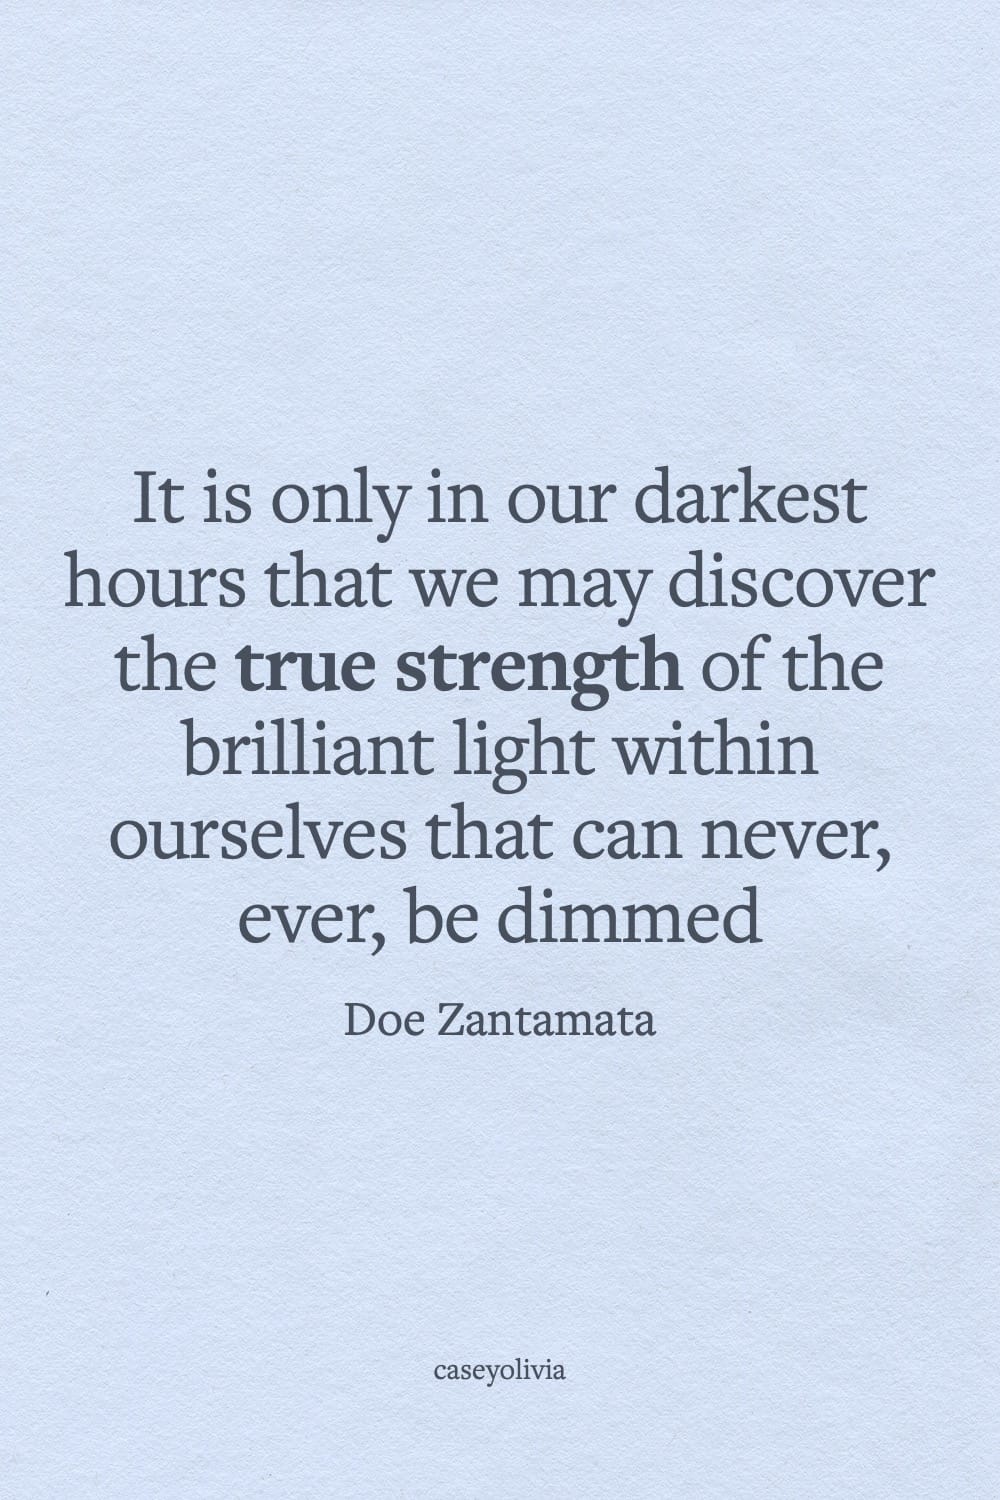 doe zantamata light withinself inspirational saying